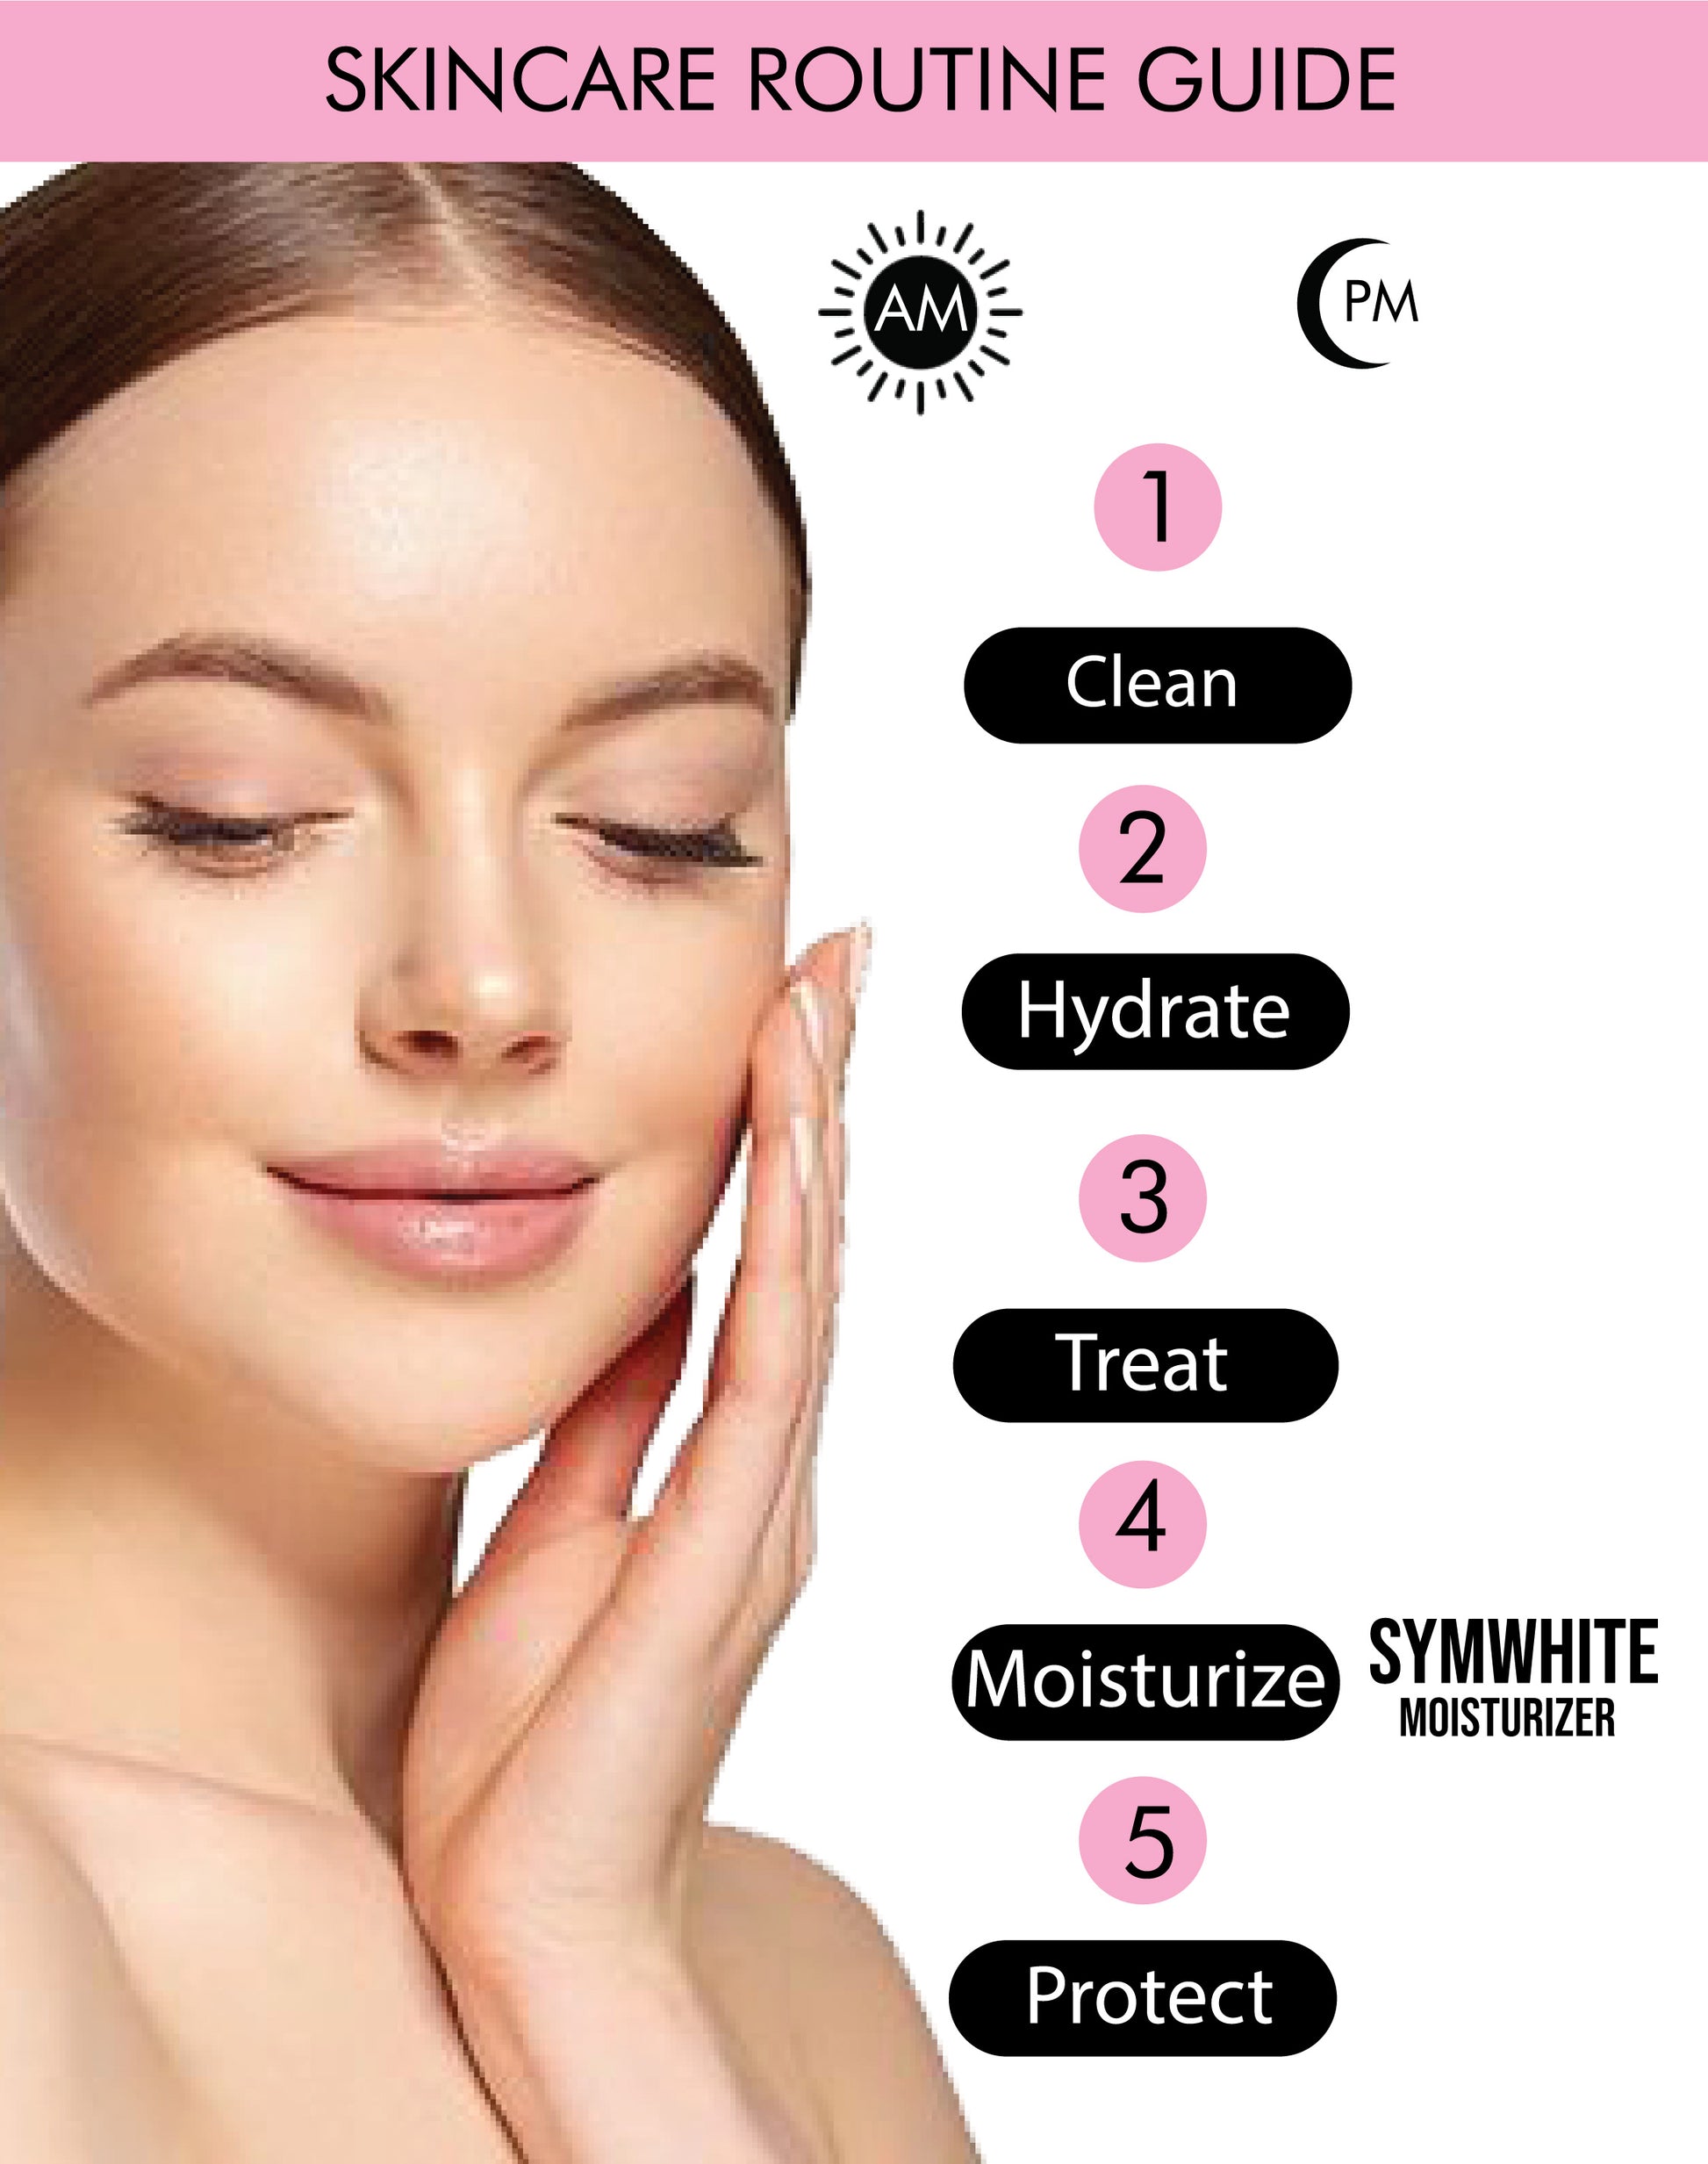 SYMWHITE MOISTURIZER Skincare Routine Guide - The True Therapy